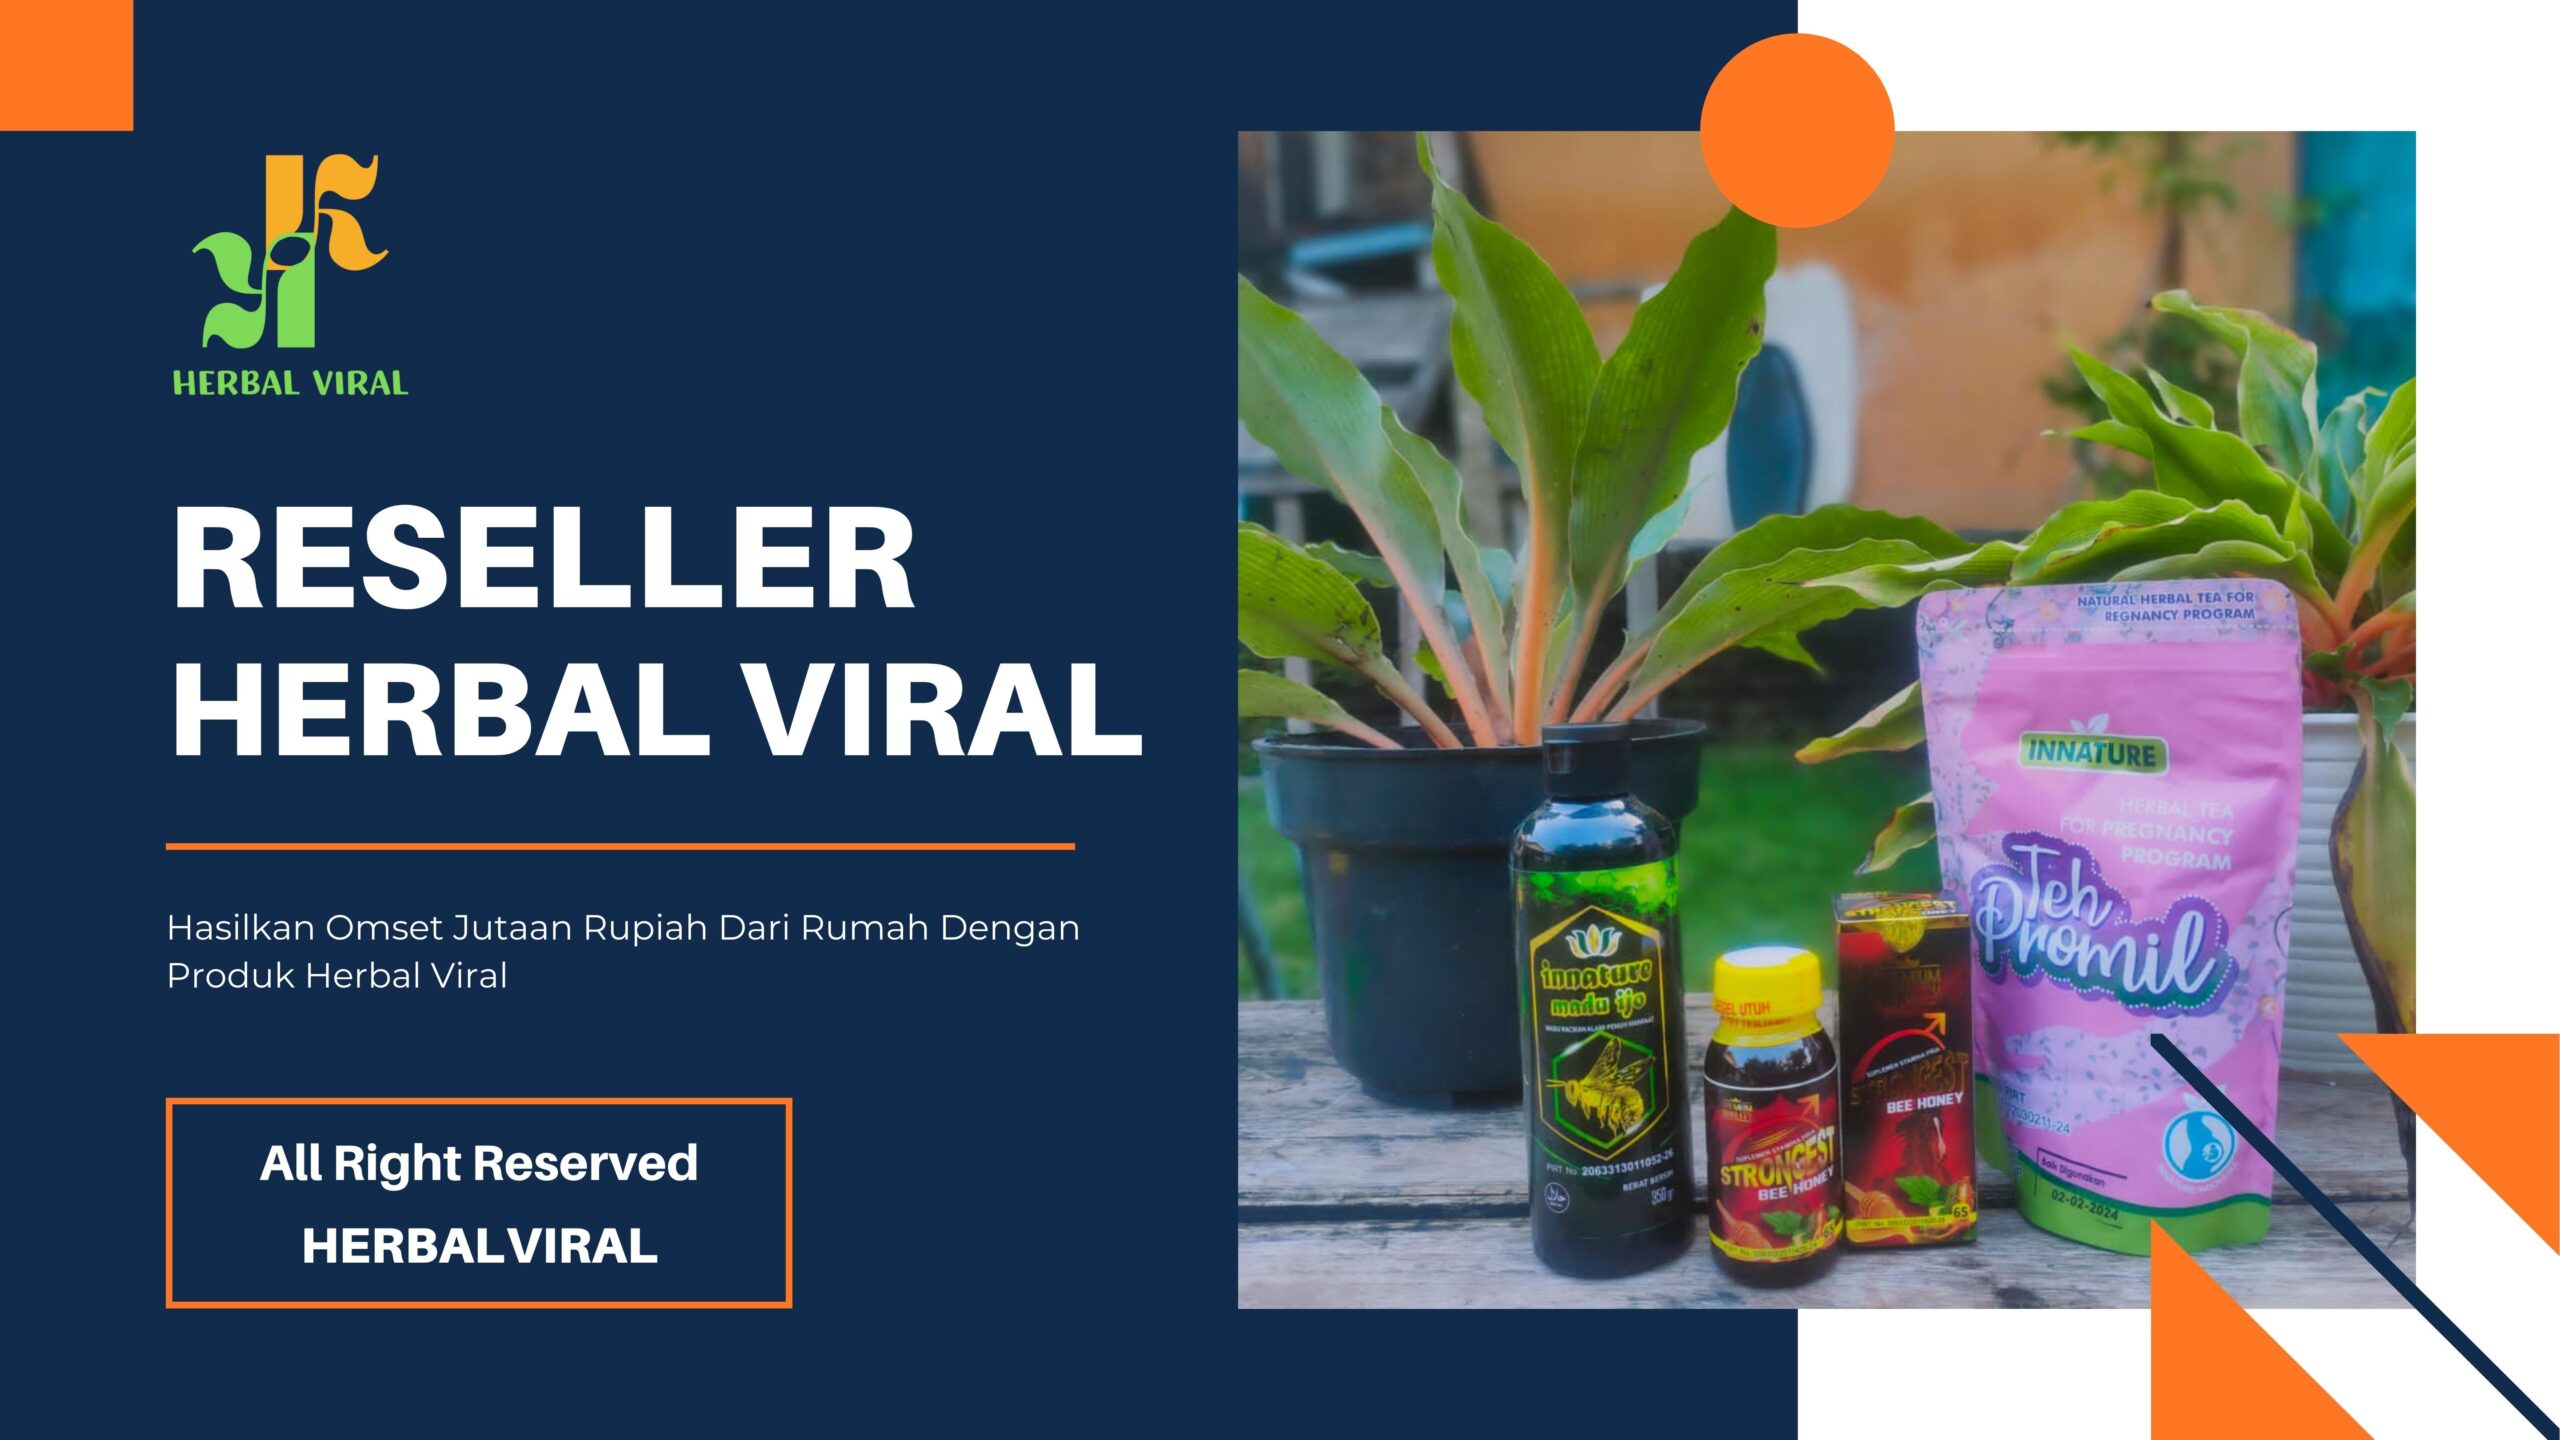 Reseller-herbal-viral-scaled-1.jpg